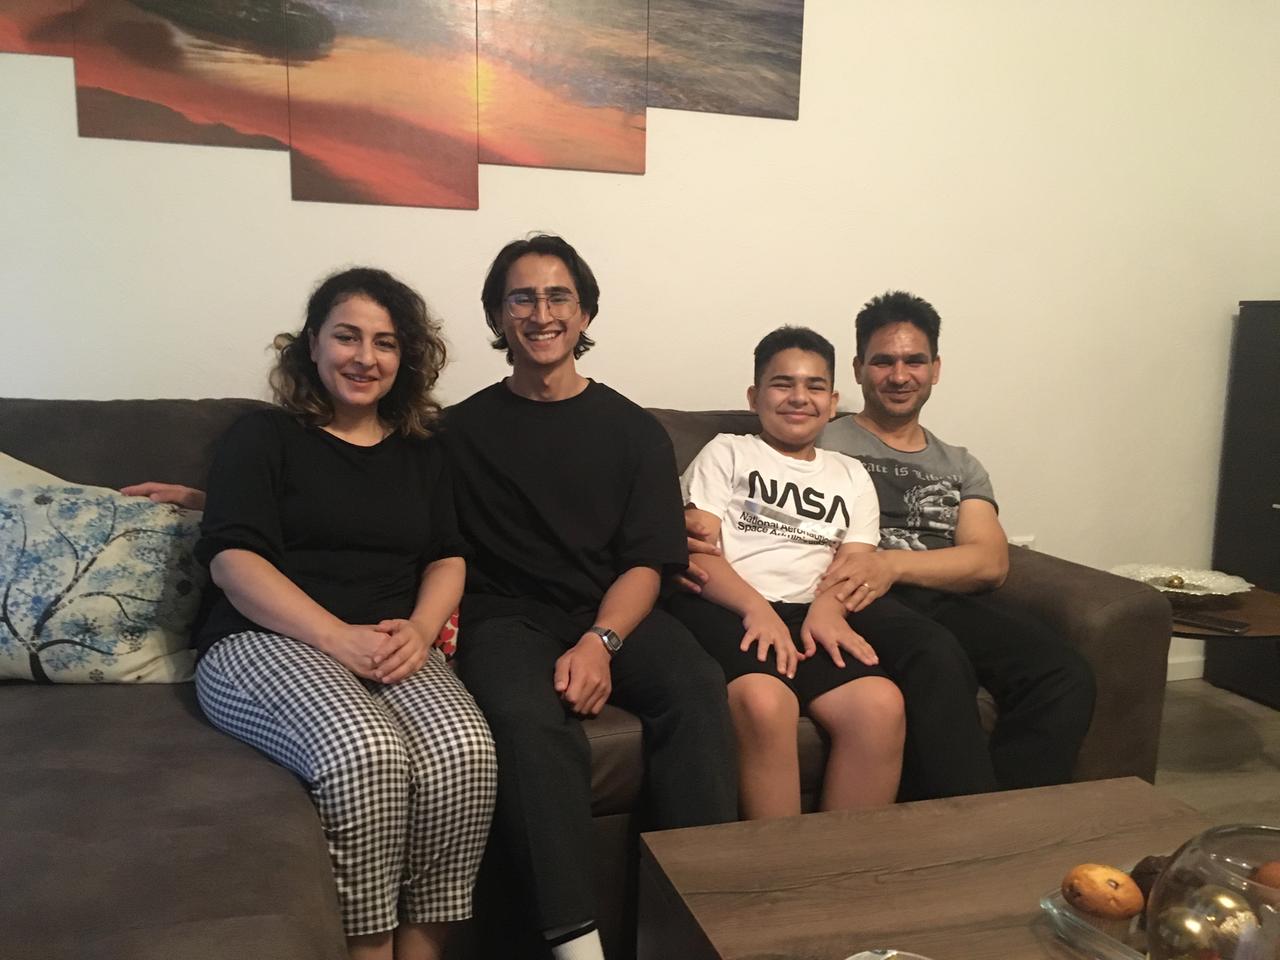 Familie Hekmat auf der Couch, die Mutter links, der Vater rechts, in der Mitte die beiden Söhne